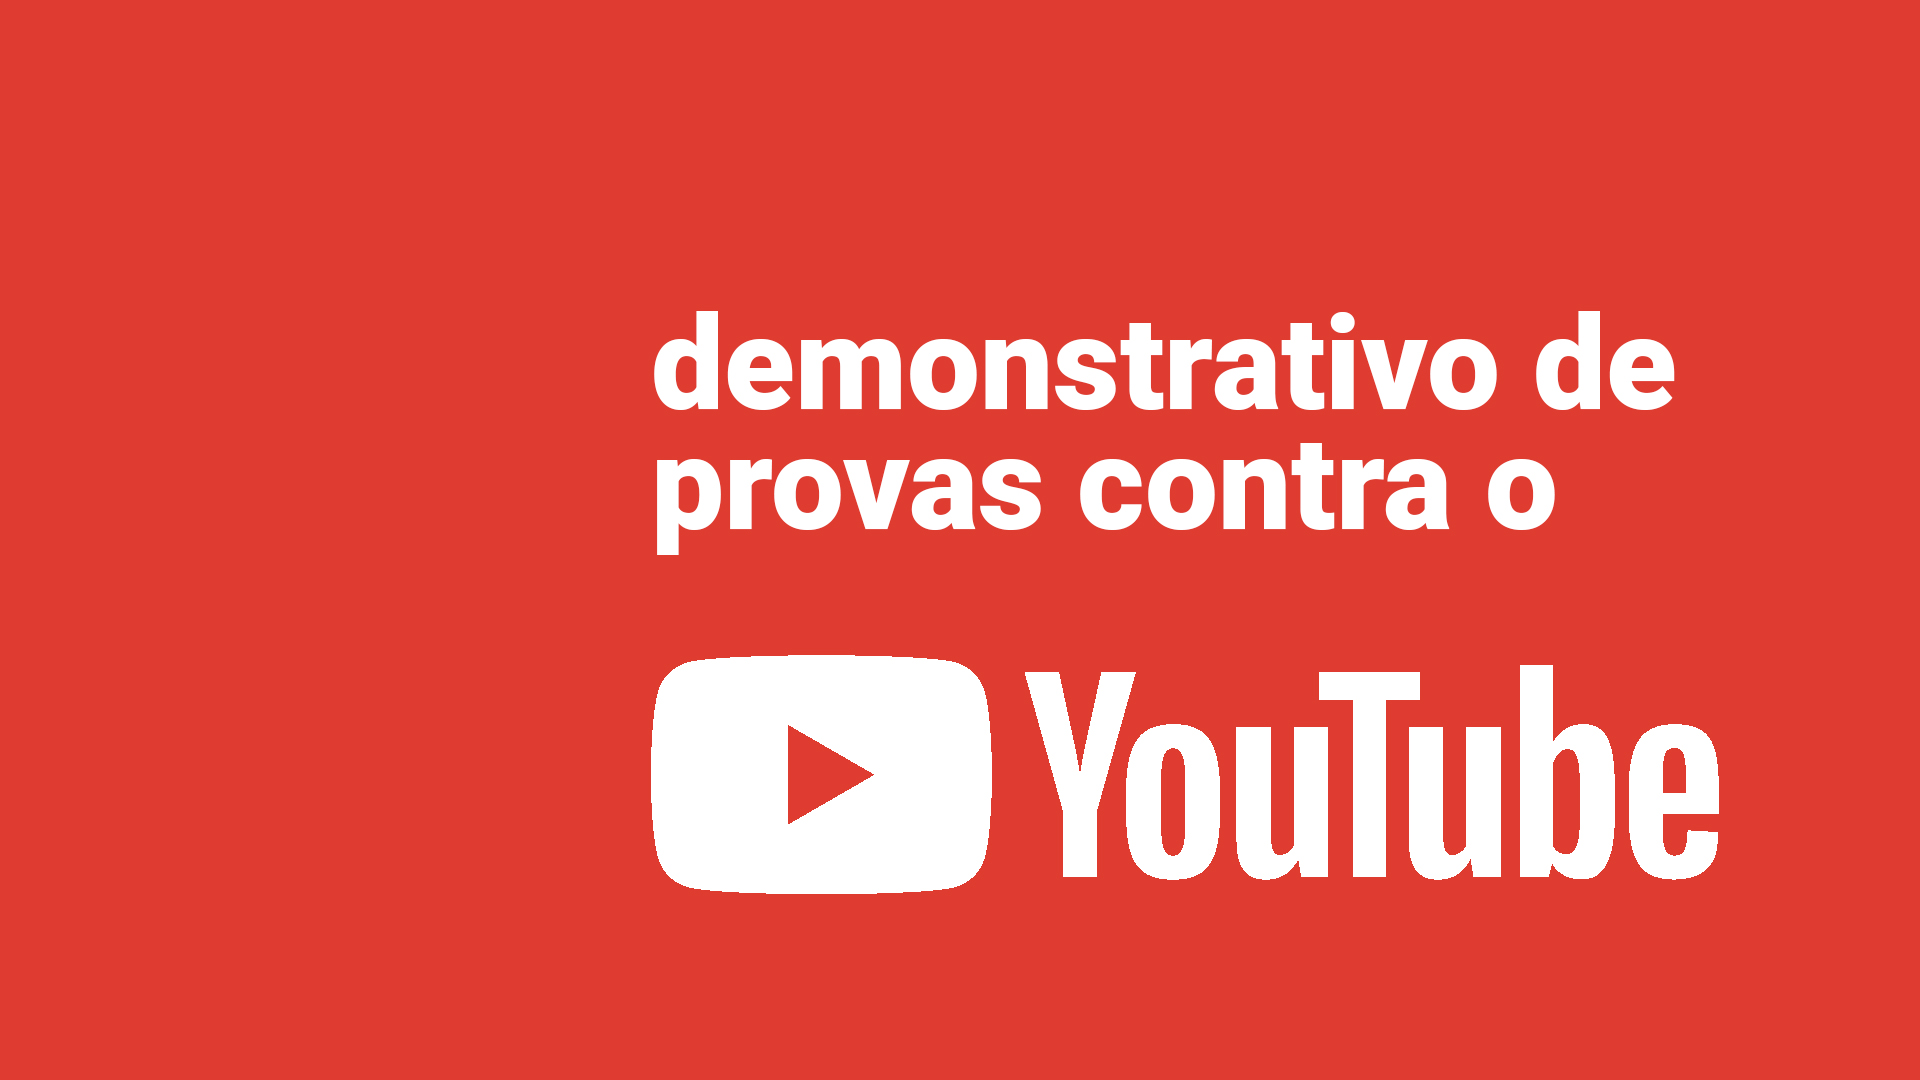 Demonstrativo de provas contra o YouTube